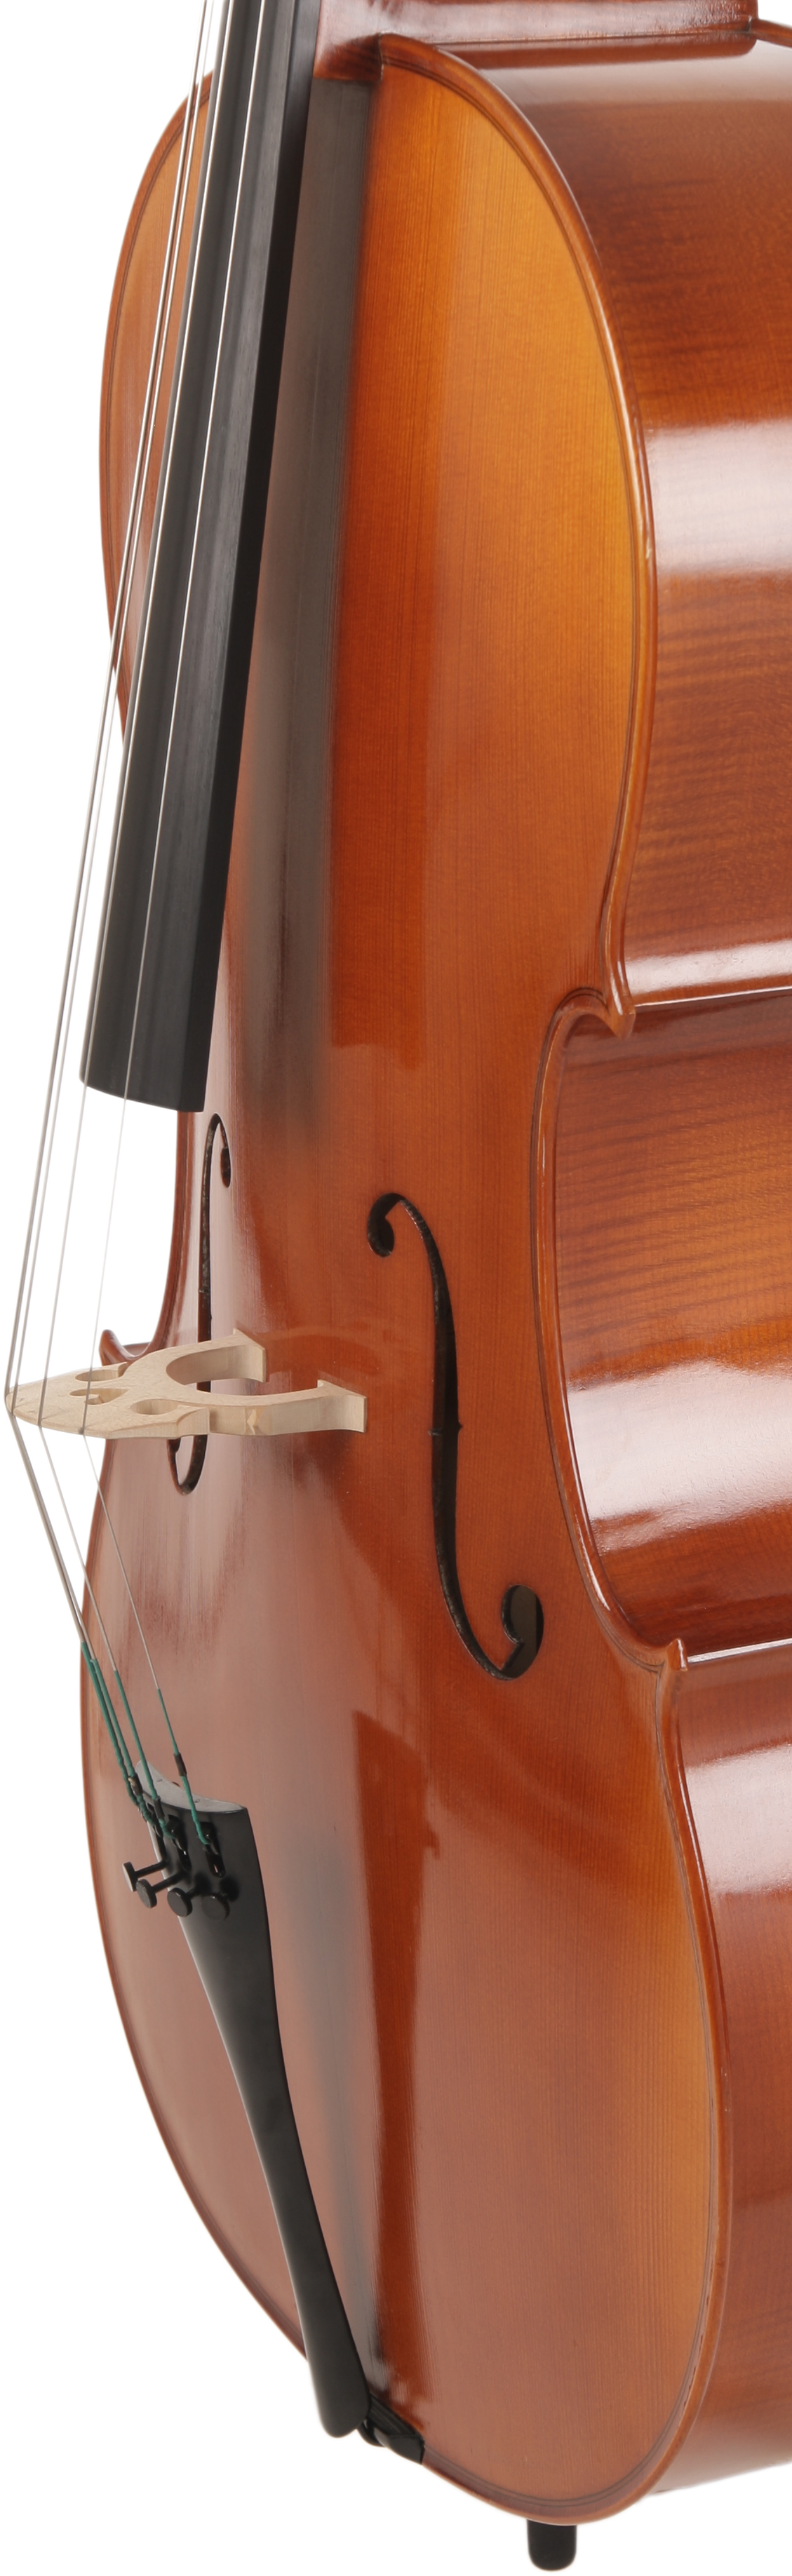 Cello Modell 500 4/4